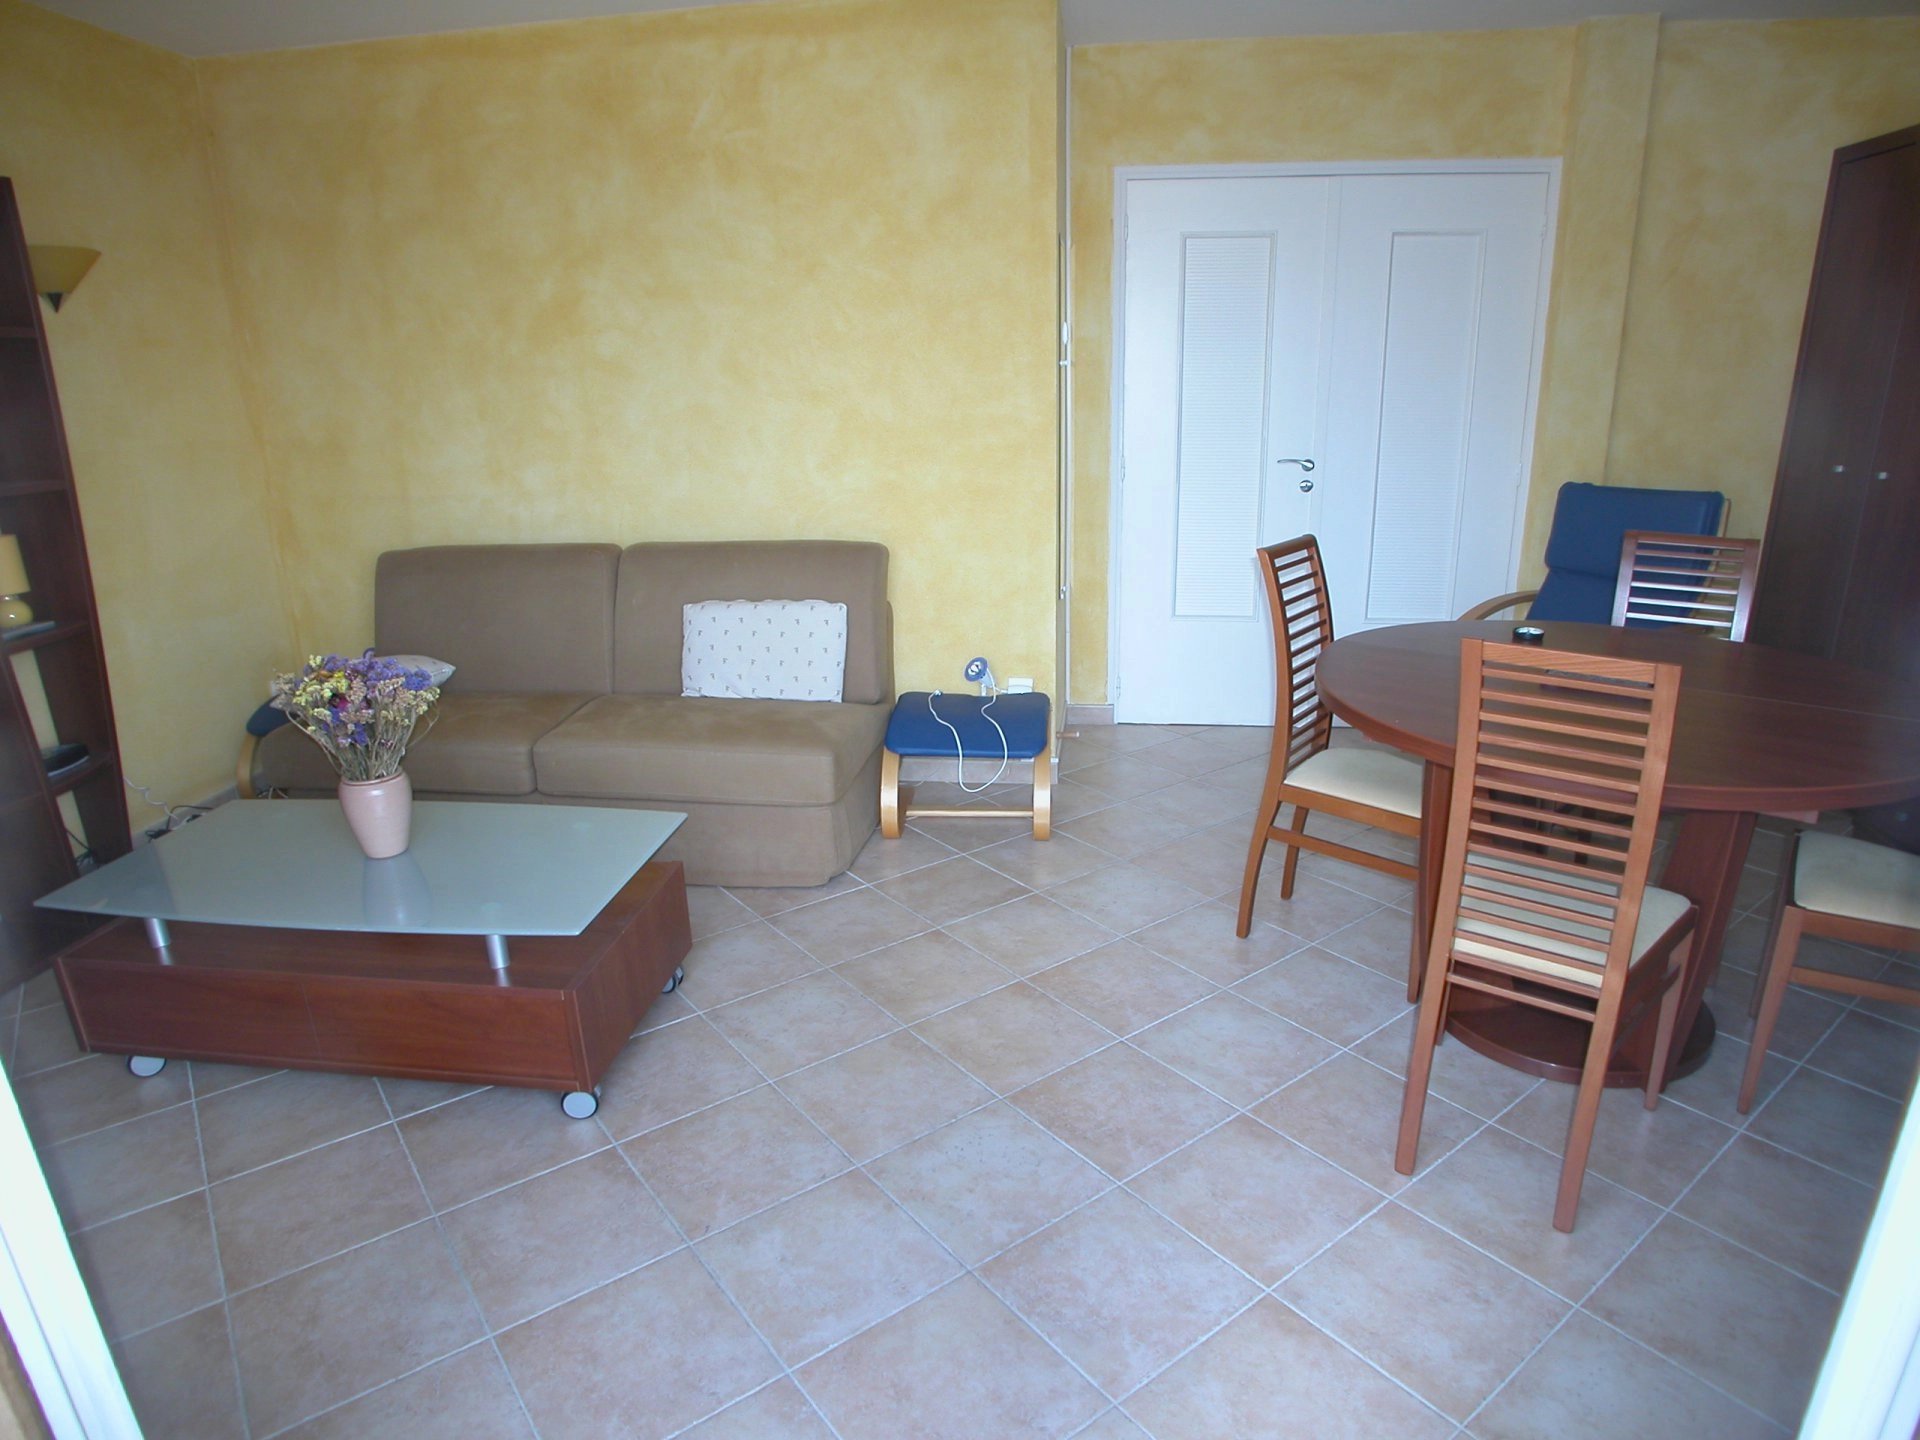 Living-room, tile